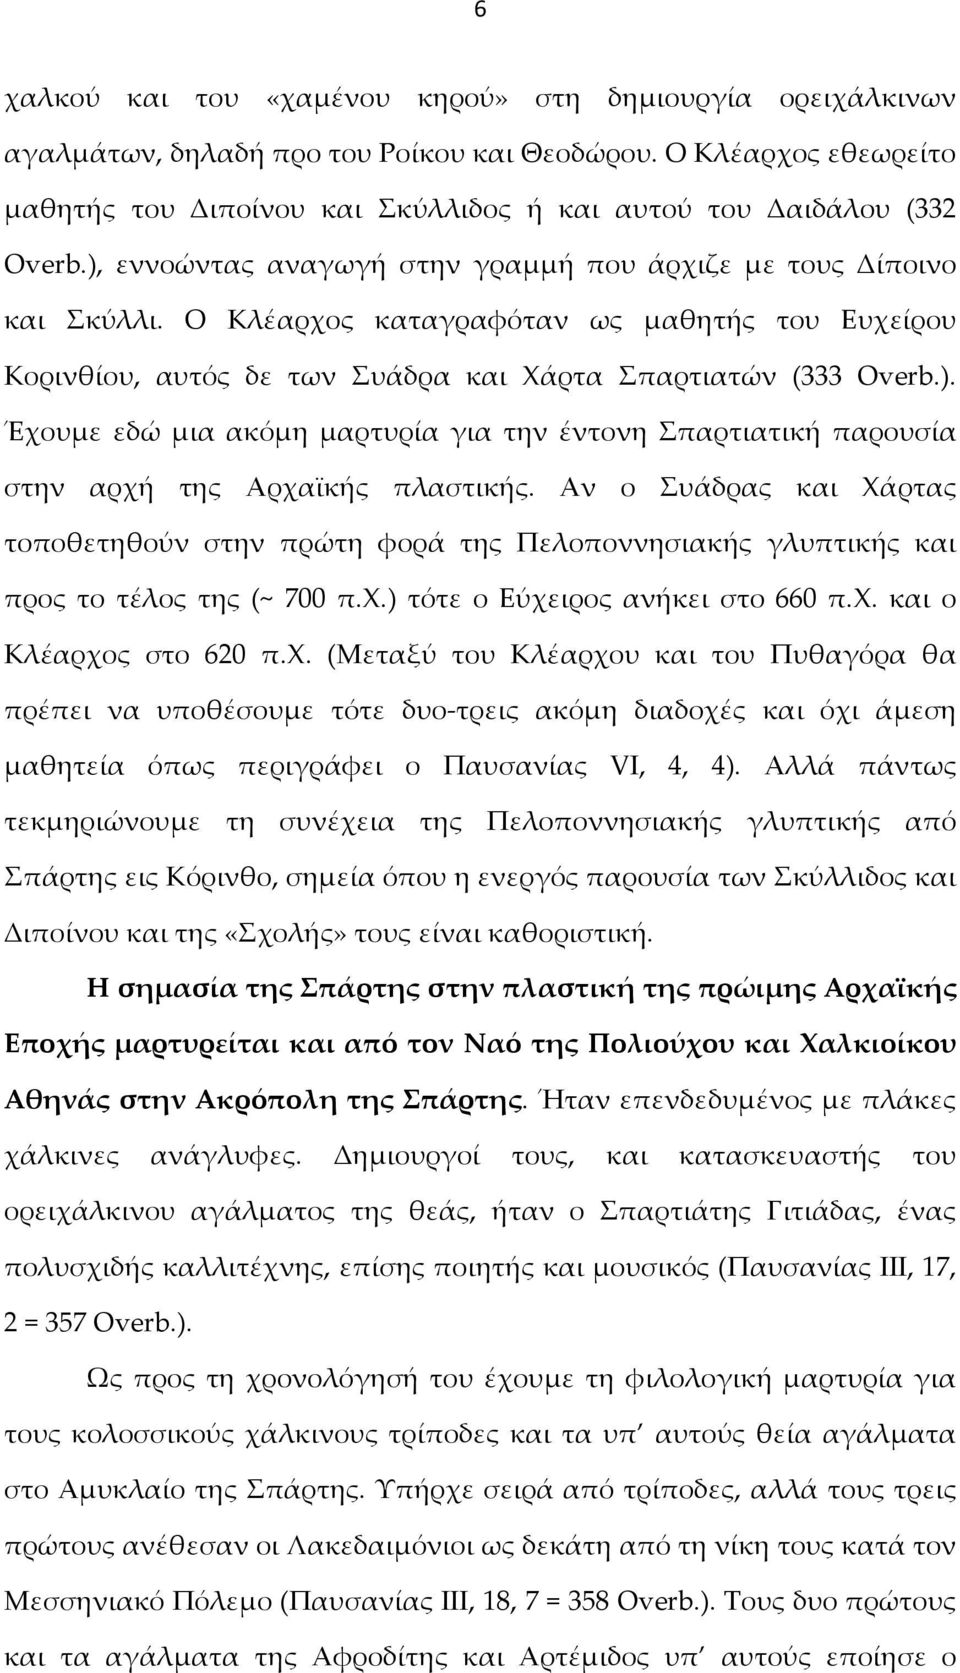 Αν ο Συάδρας και Χάρτας τοποθετηθούν στην πρώτη φορά της Πελοποννησιακής γλυπτικής και προς το τέλος της (~ 700 π.χ.